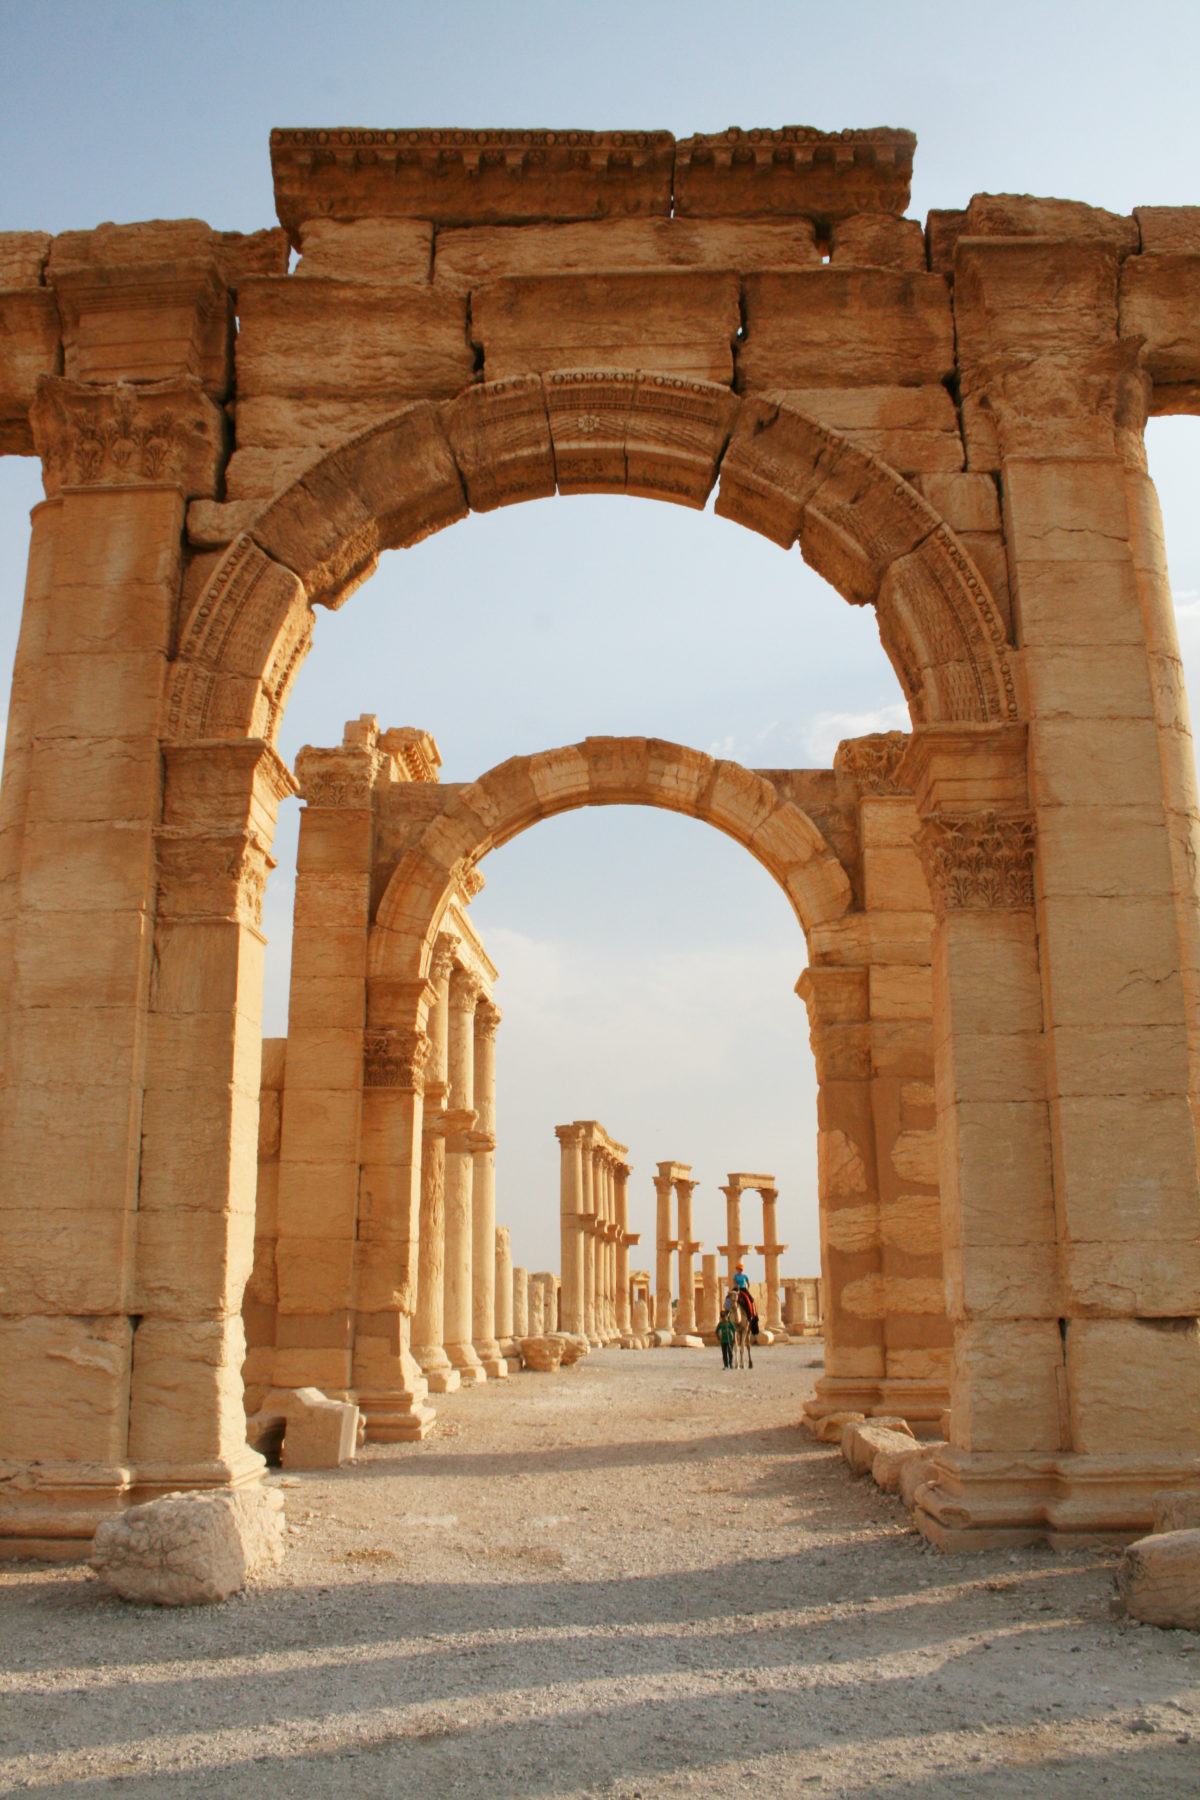 シリア内戦前の砂漠のオアシス「パルミラ遺跡」を歩く